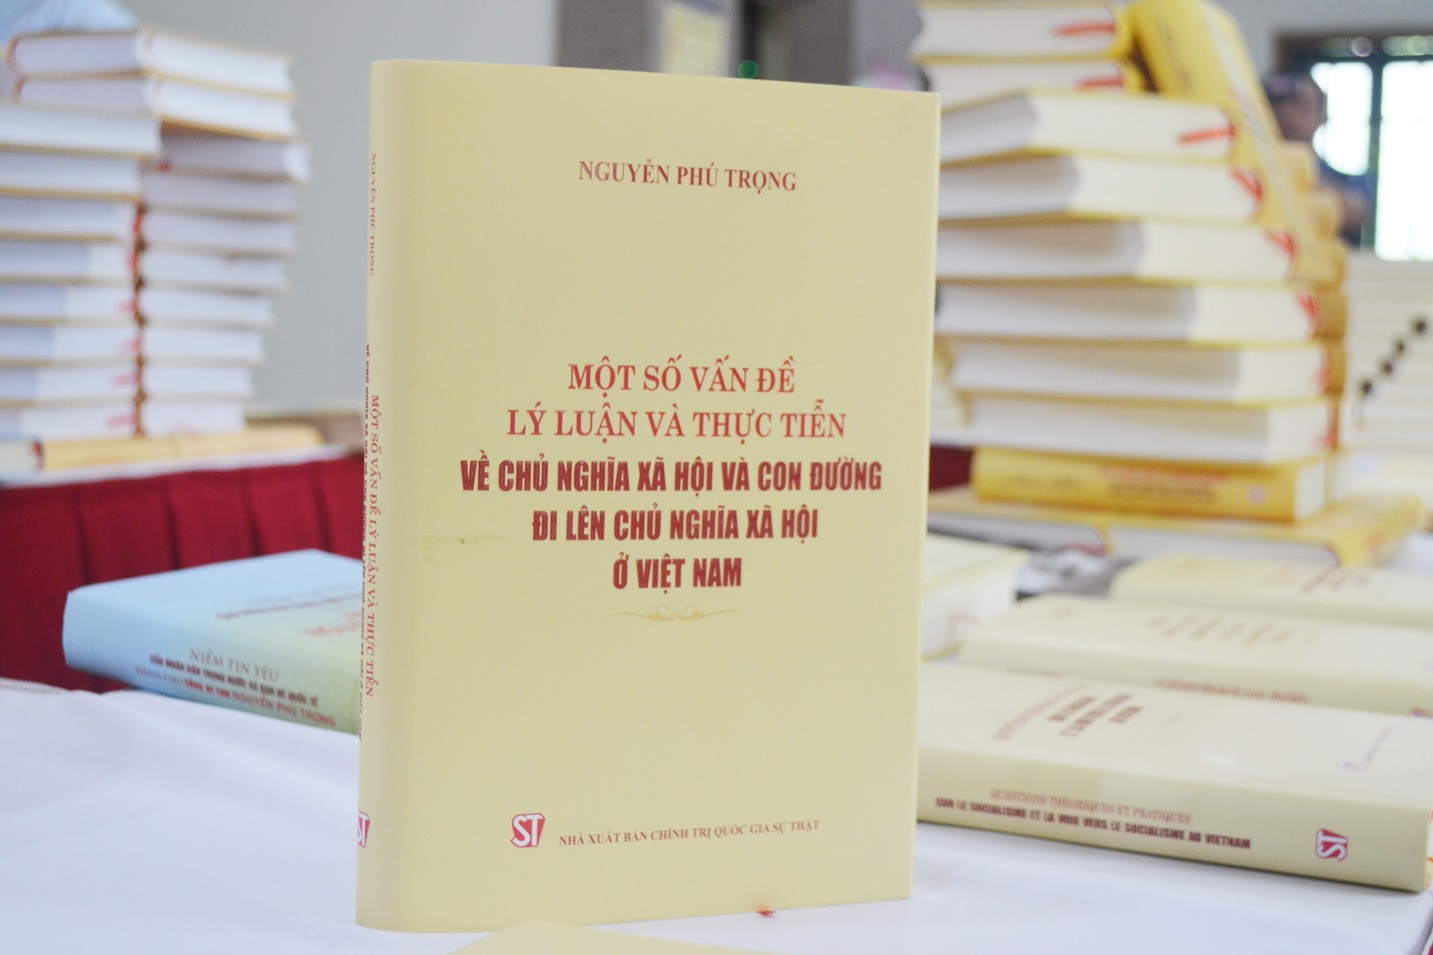 Ra mắt cuốn sách của Tổng Bí thư Nguyễn Phú Trọng bằng 7 ngoại ngữ